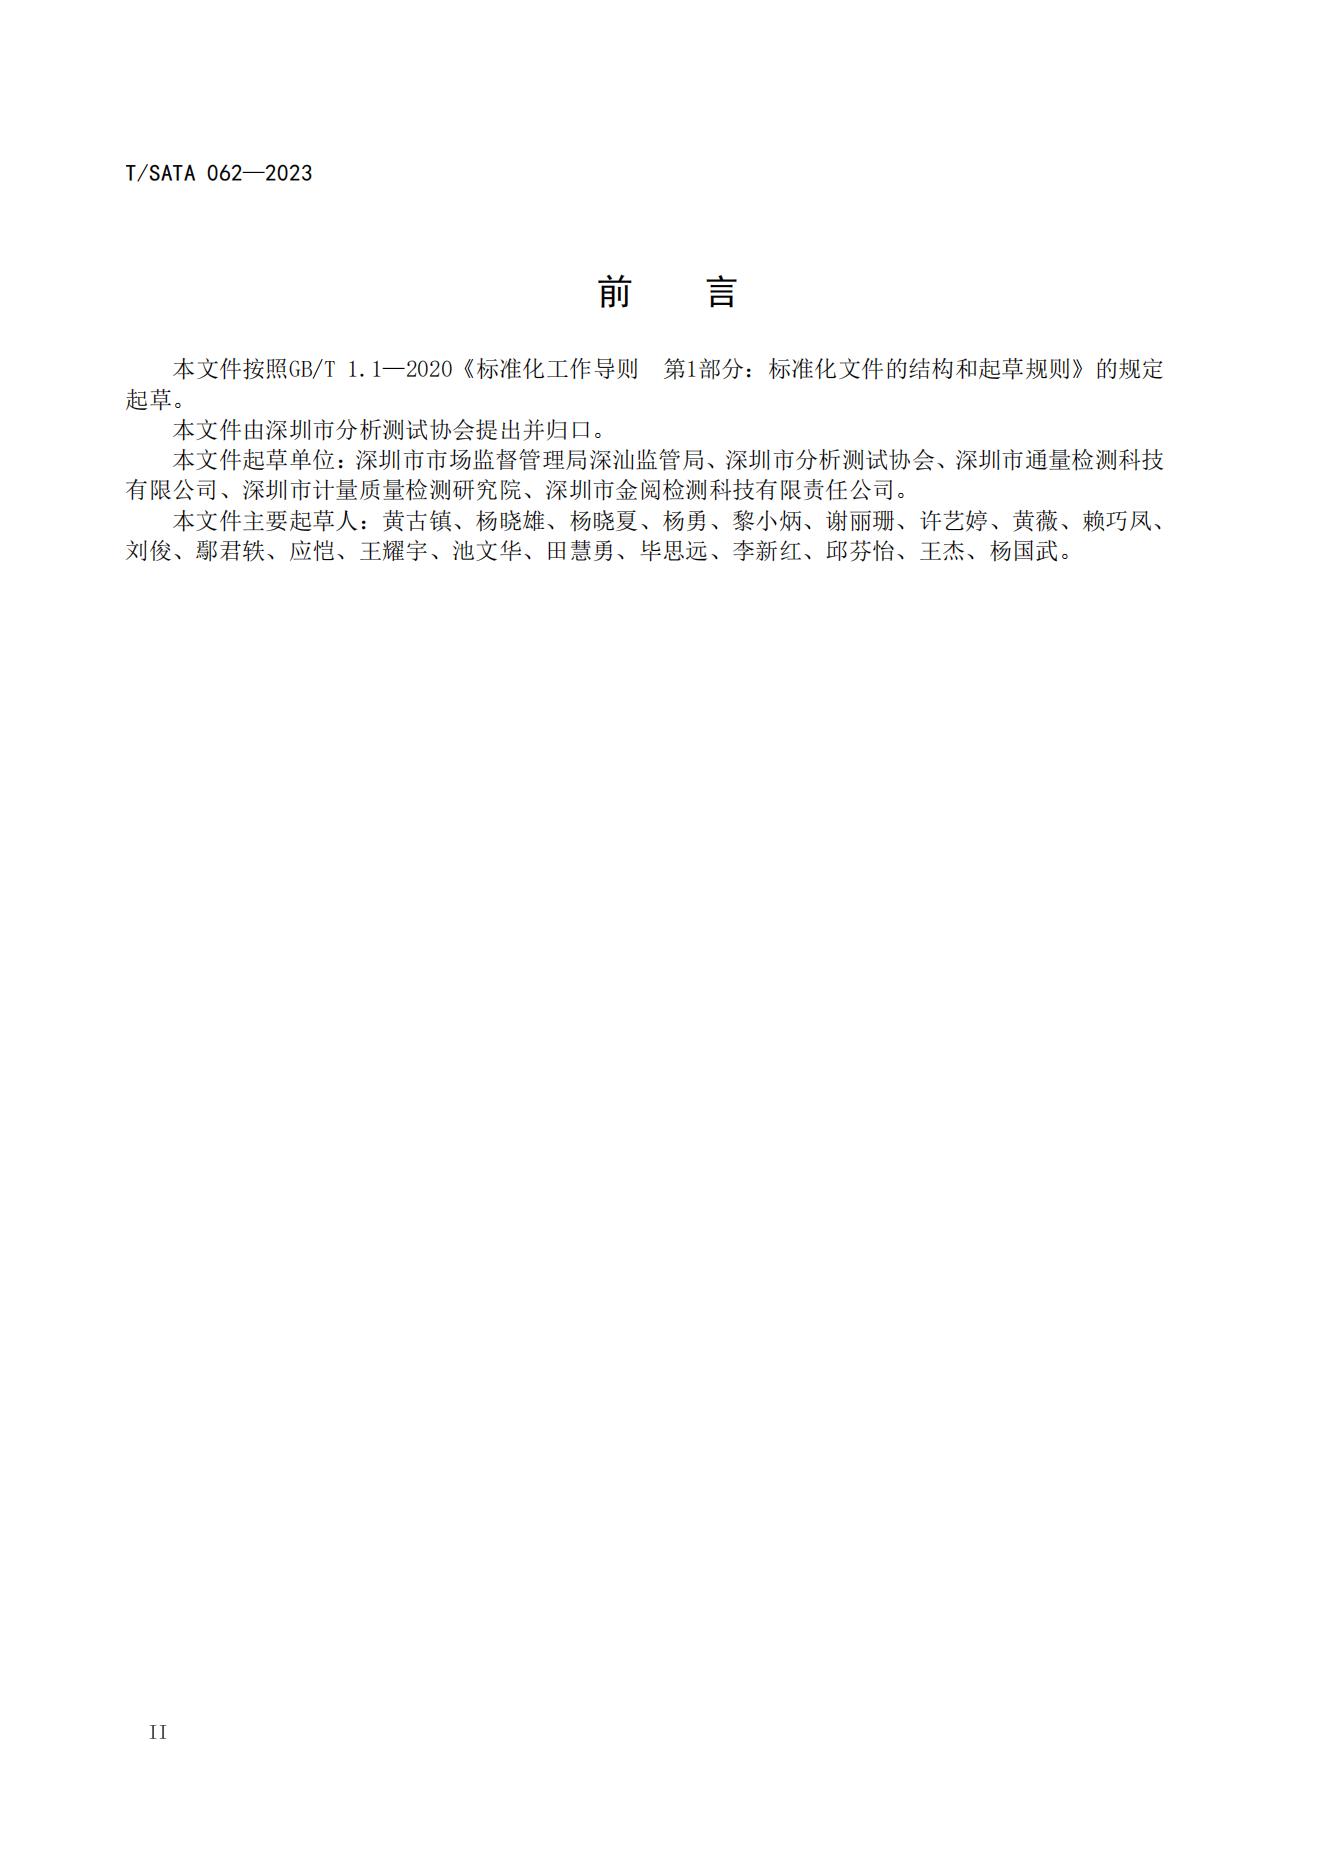 TSATA 062-2023标准文本-小作坊食品  非发酵豆制品（豆腐、豆腐干）_03.jpg